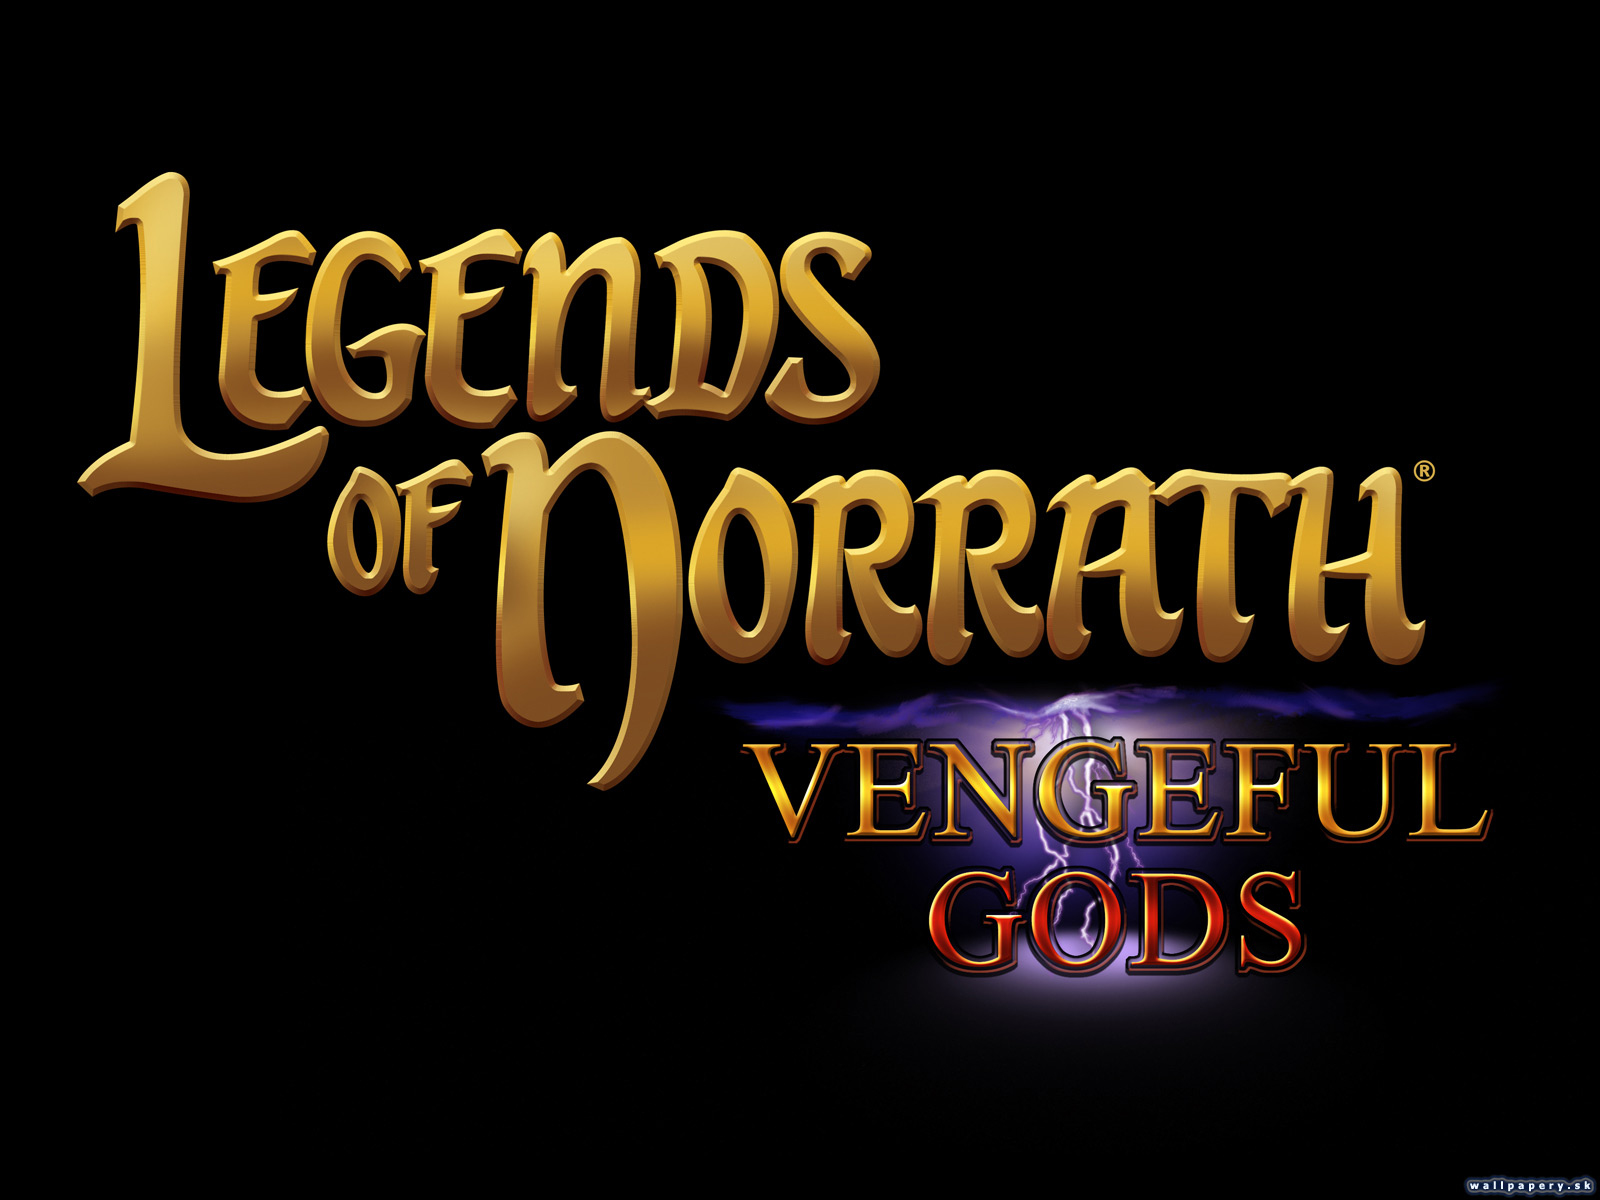 Legends of Norrath: Vengeful Gods - wallpaper 1